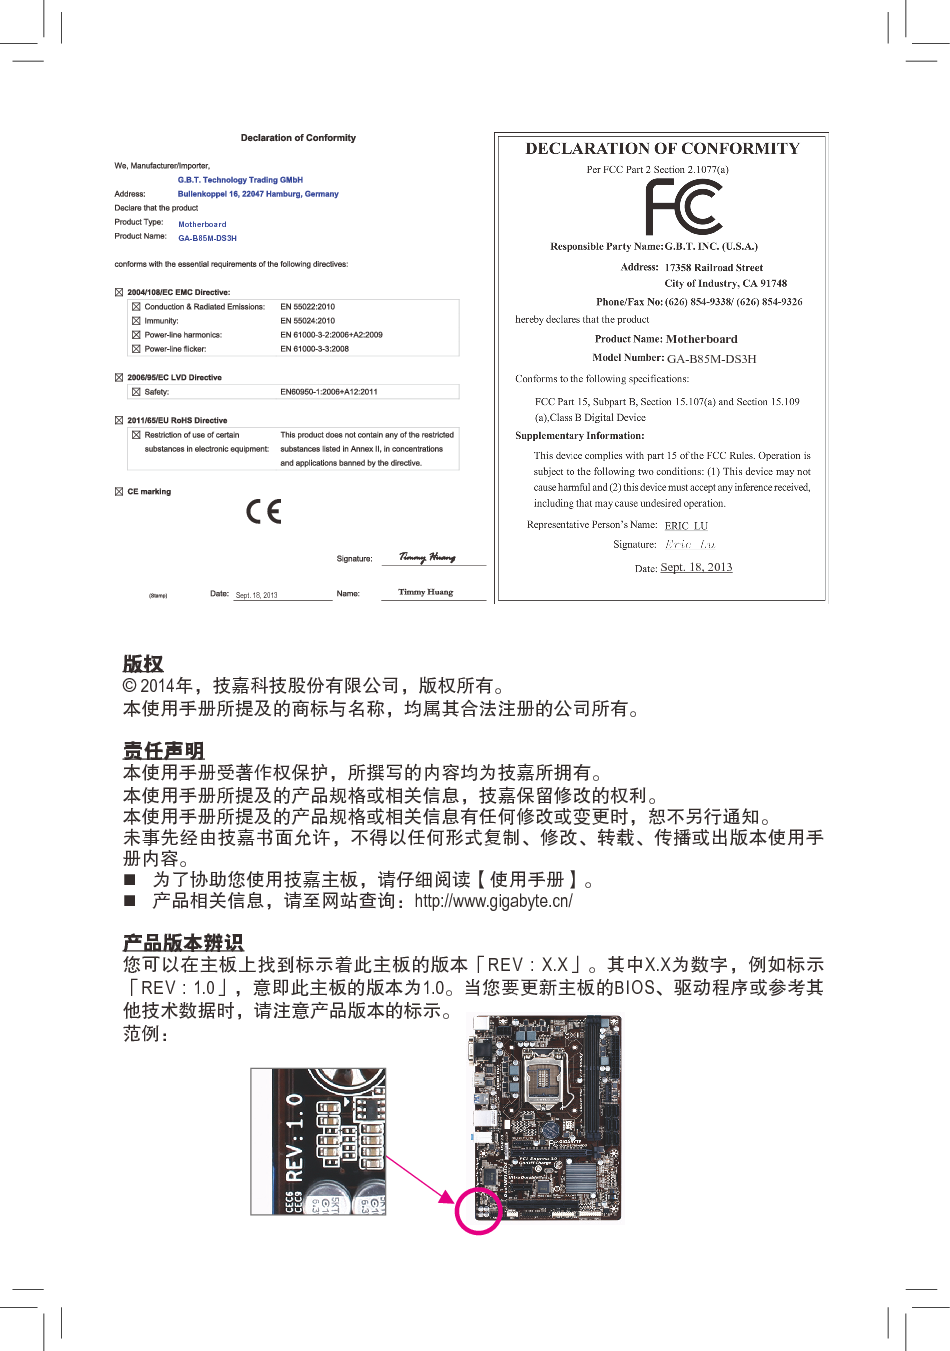 技嘉 Gigabyte GA-B85M-DS3H 1102版 使用手册 第1页